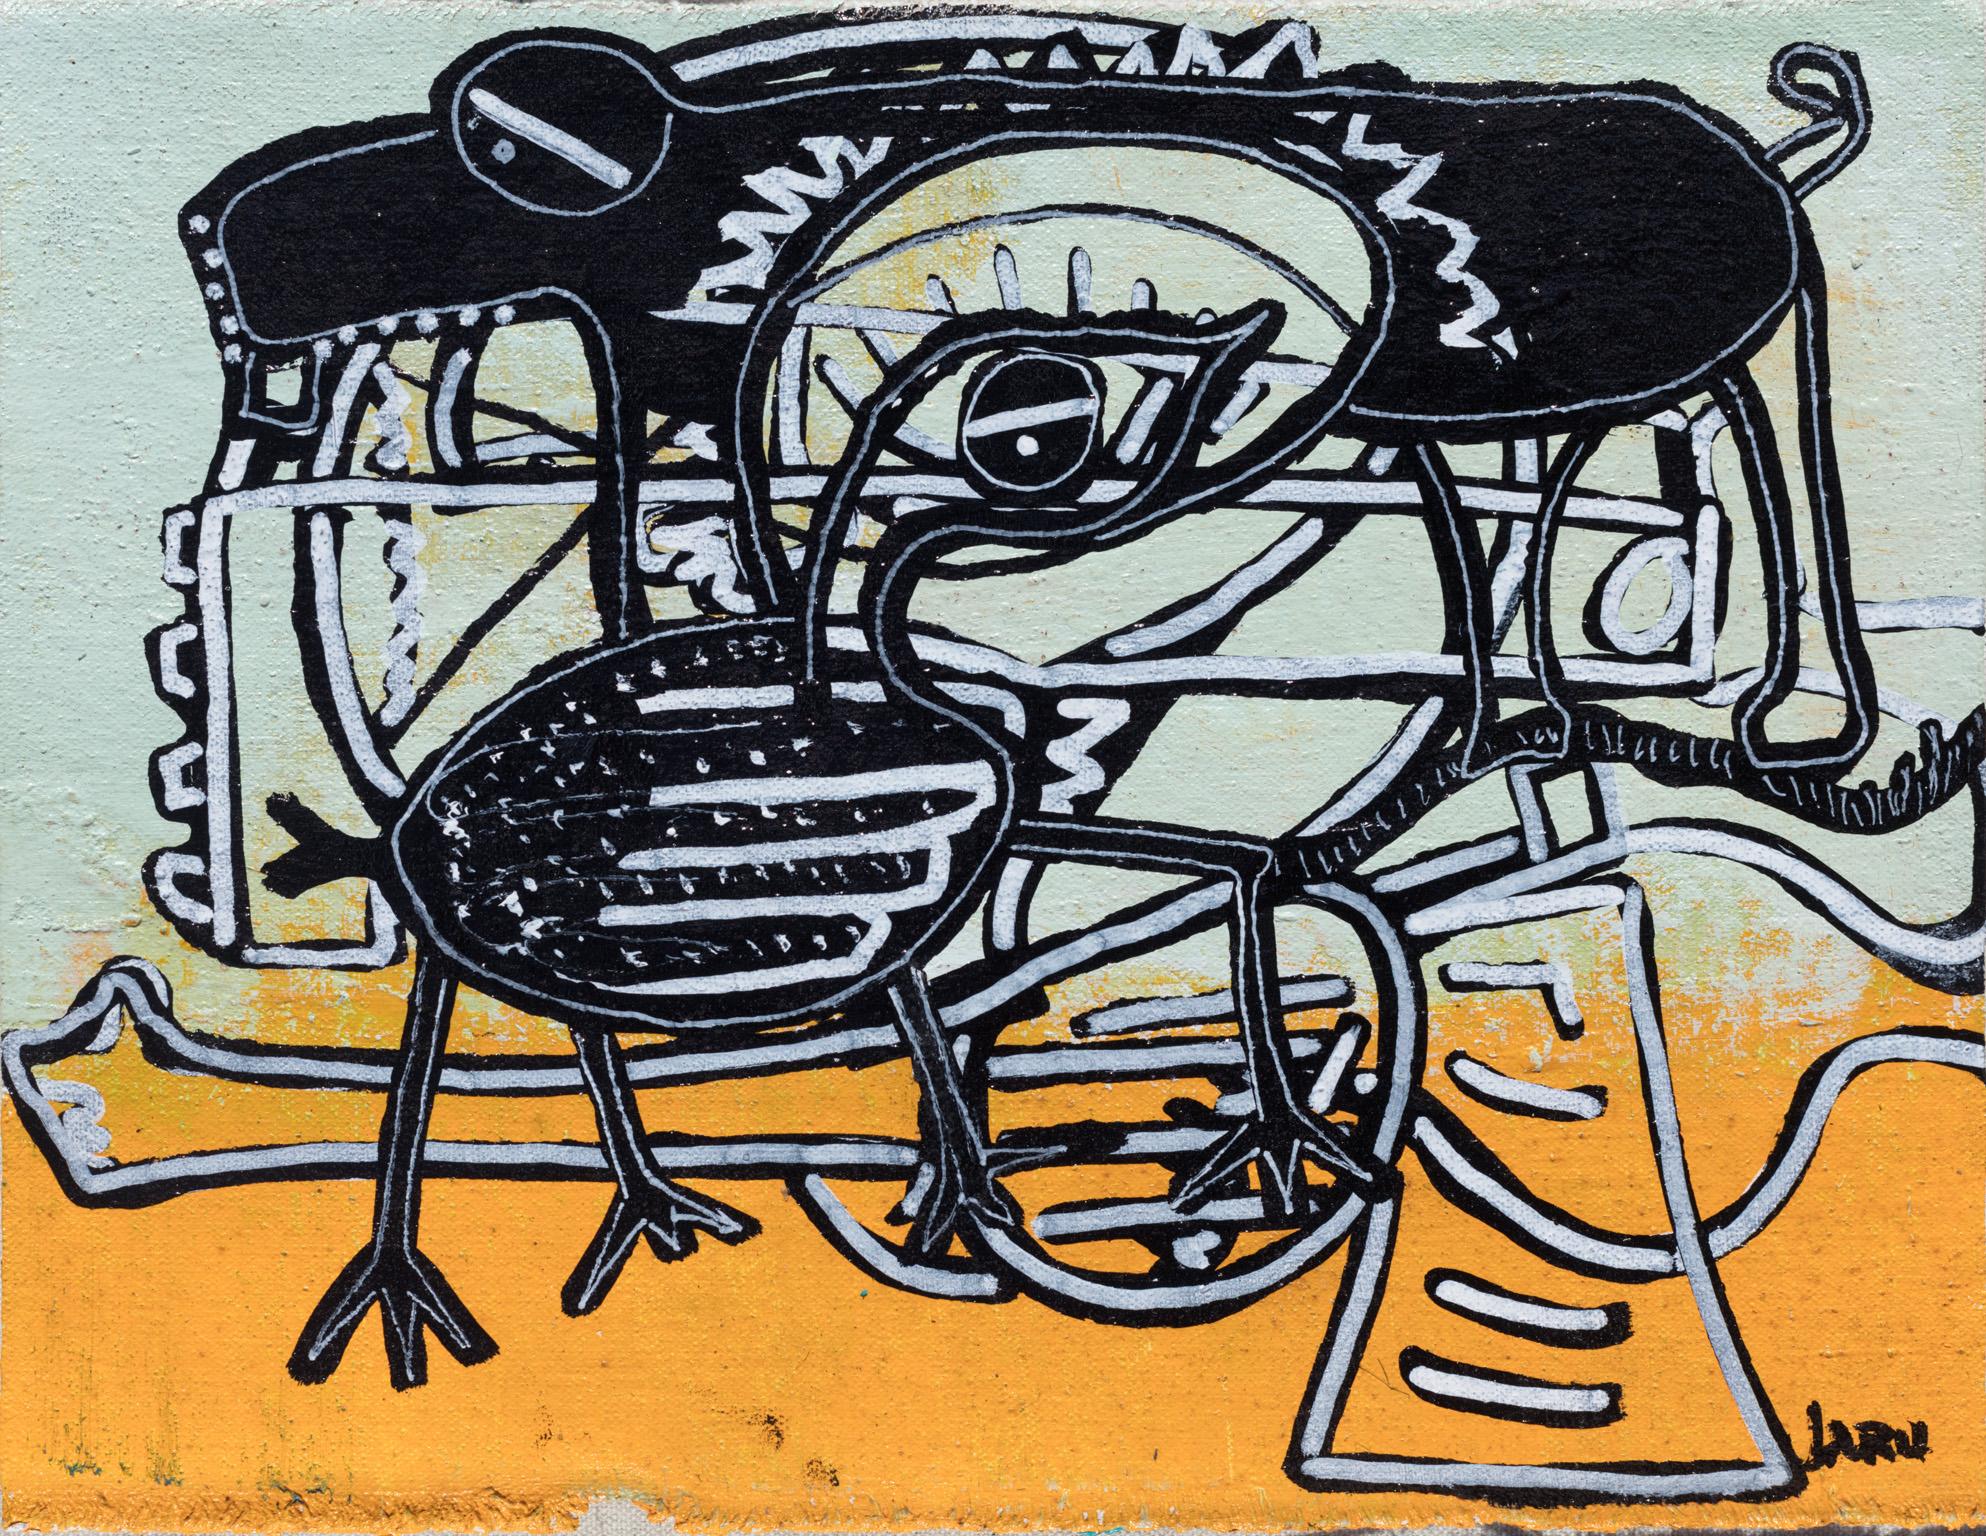 Parris Jaru Figurative Painting – Gun Control – Surrealistisches gelbes und schwarzes Gemälde einer Ente, eines Hundes und eines Gewehrs